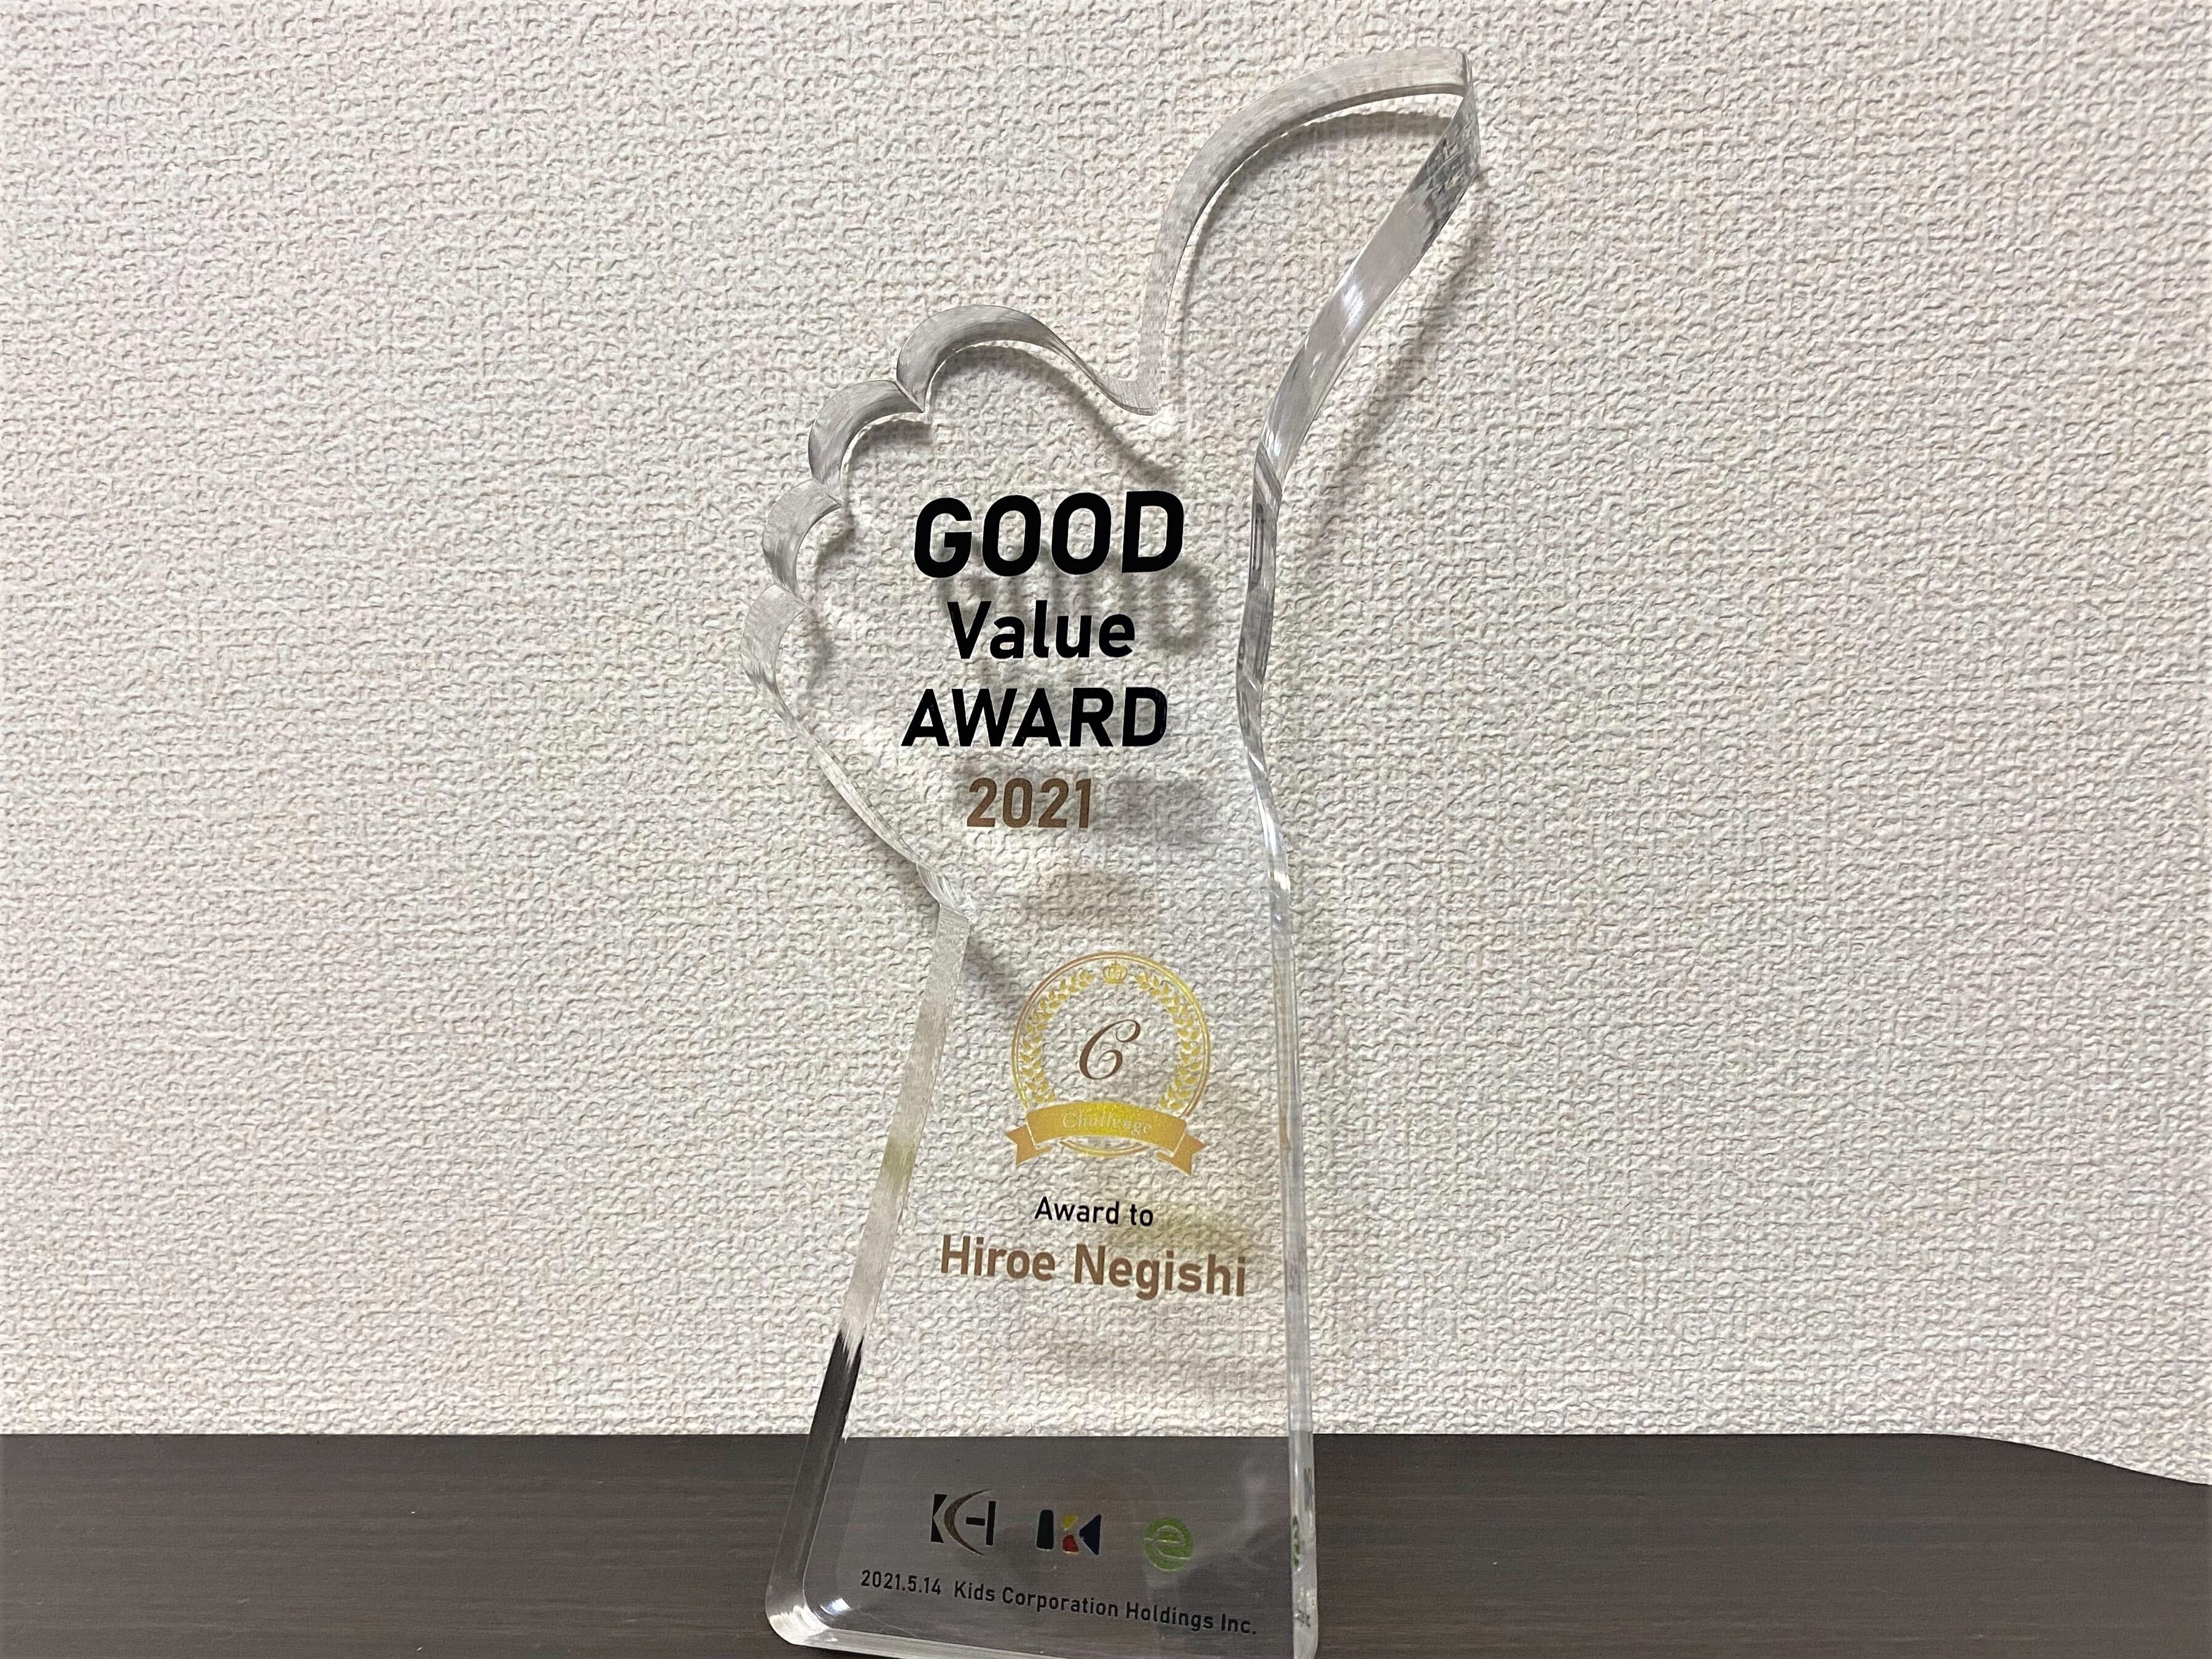 全社総会の場で、Valueを体現した社員を表彰するGood Value Award。全社投票で選ばれた社員にはトロフィーが贈られる。